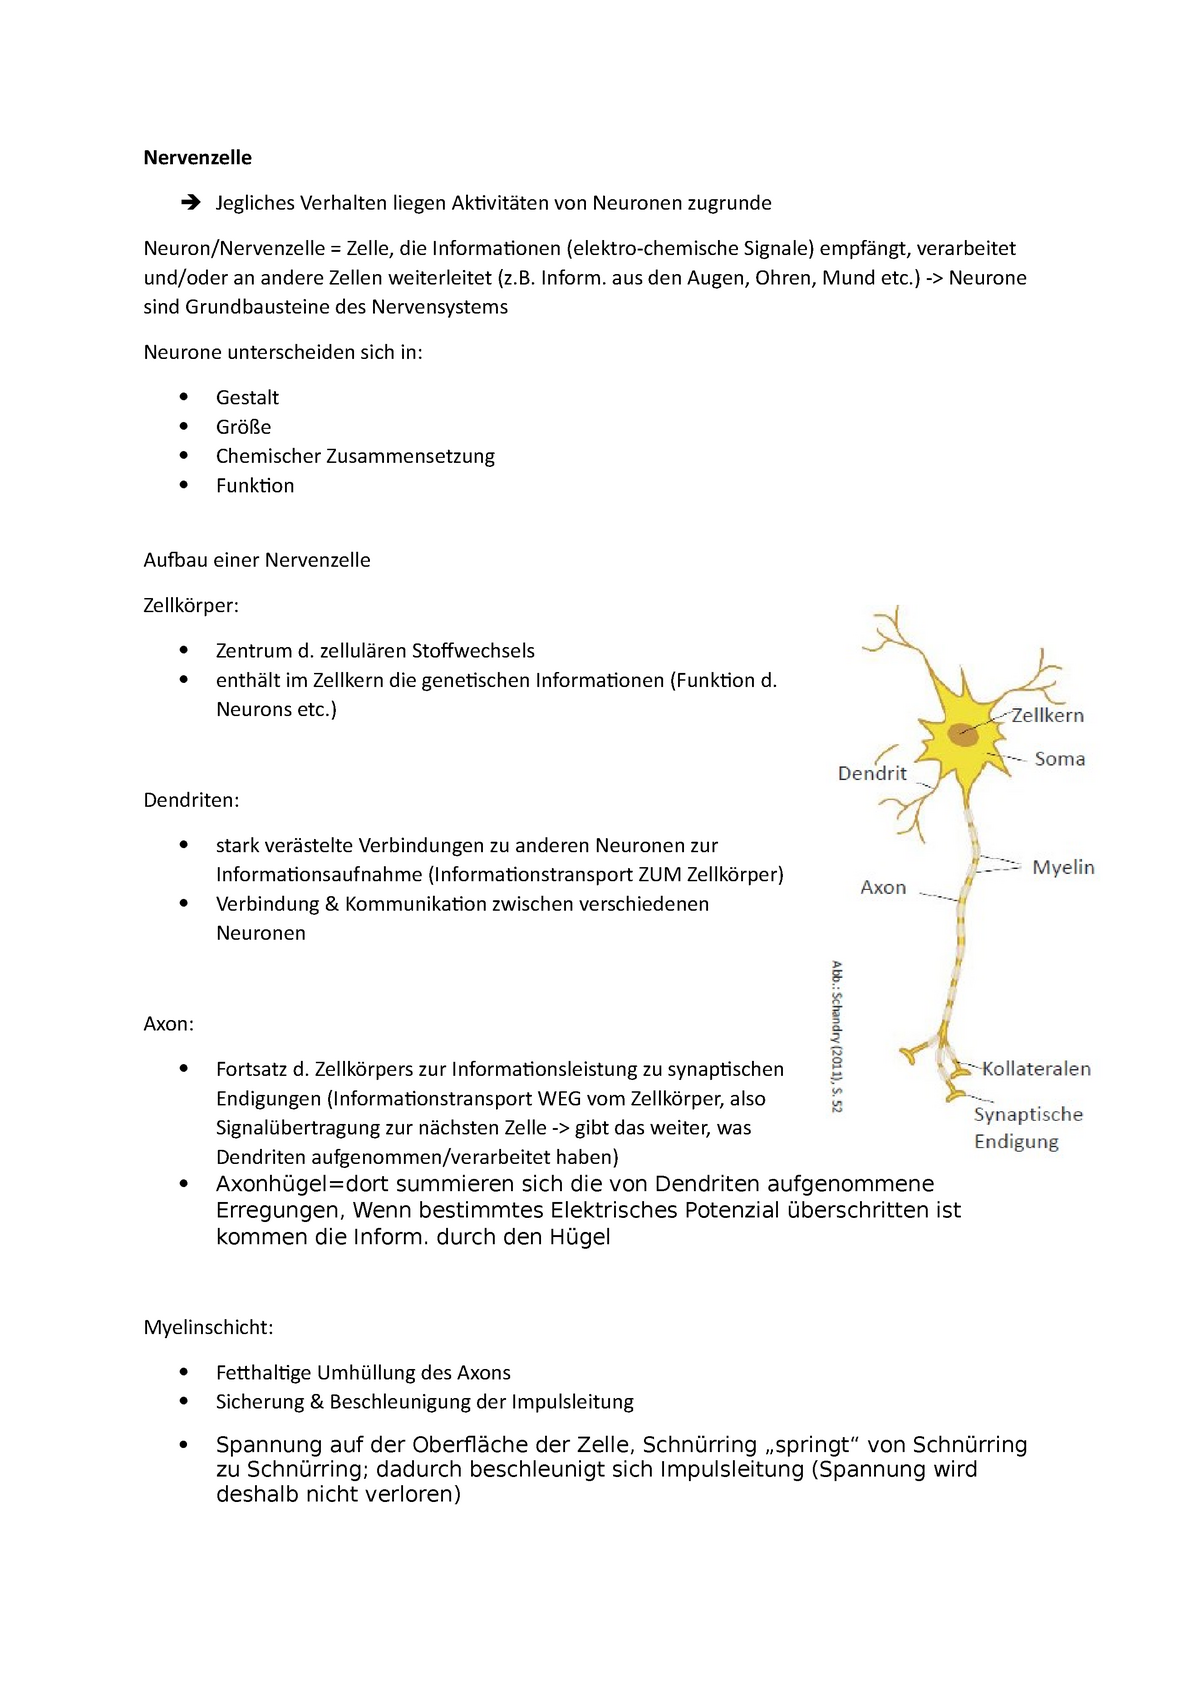 Die Synapsen - die Verbindungsstellen zwischen den Nervenzellen